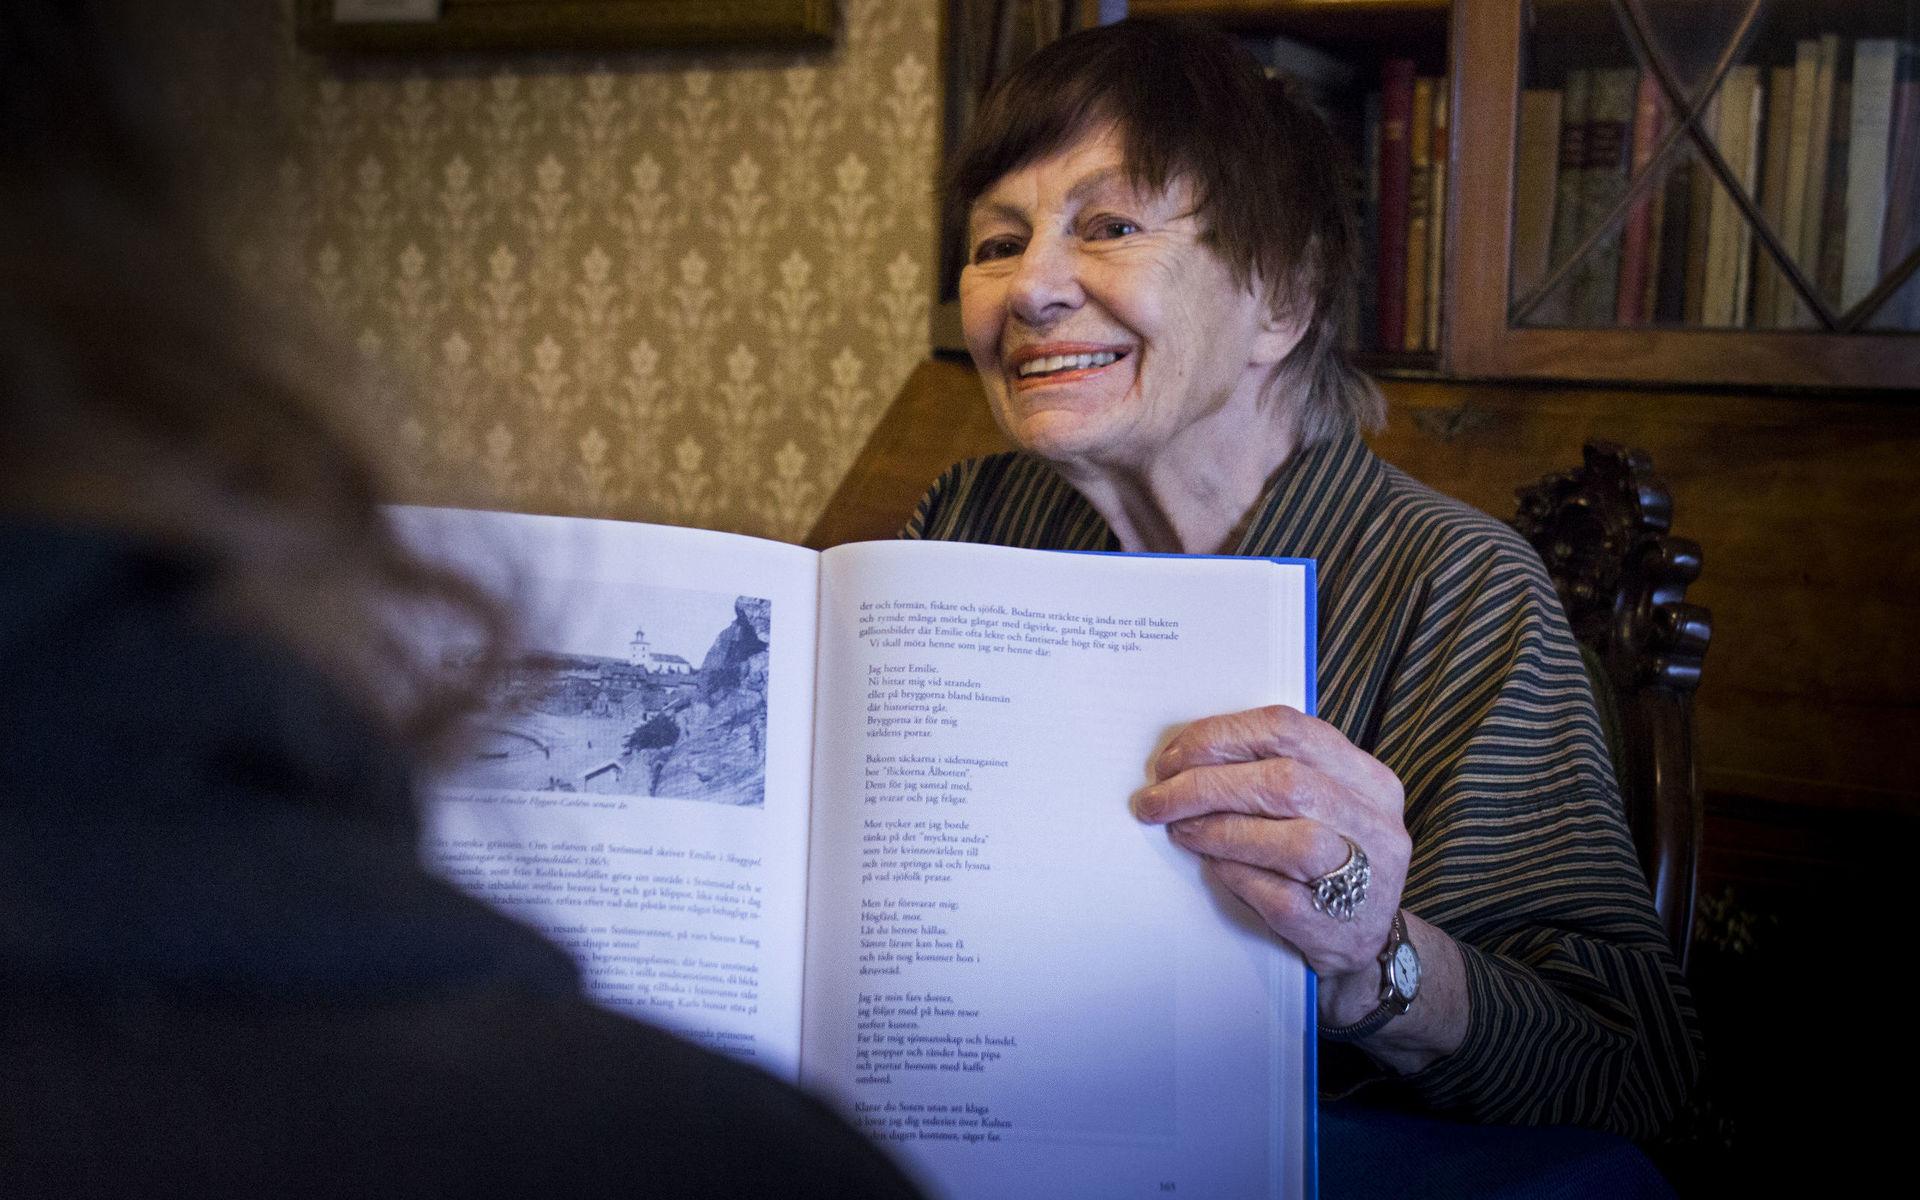 DOKUMENTATION. – Så här såg Strömstad ut på Emilies tid. Ann Smith visar foton som illustrerar hennes text i Bohusläns Gilles jubileumsbok.